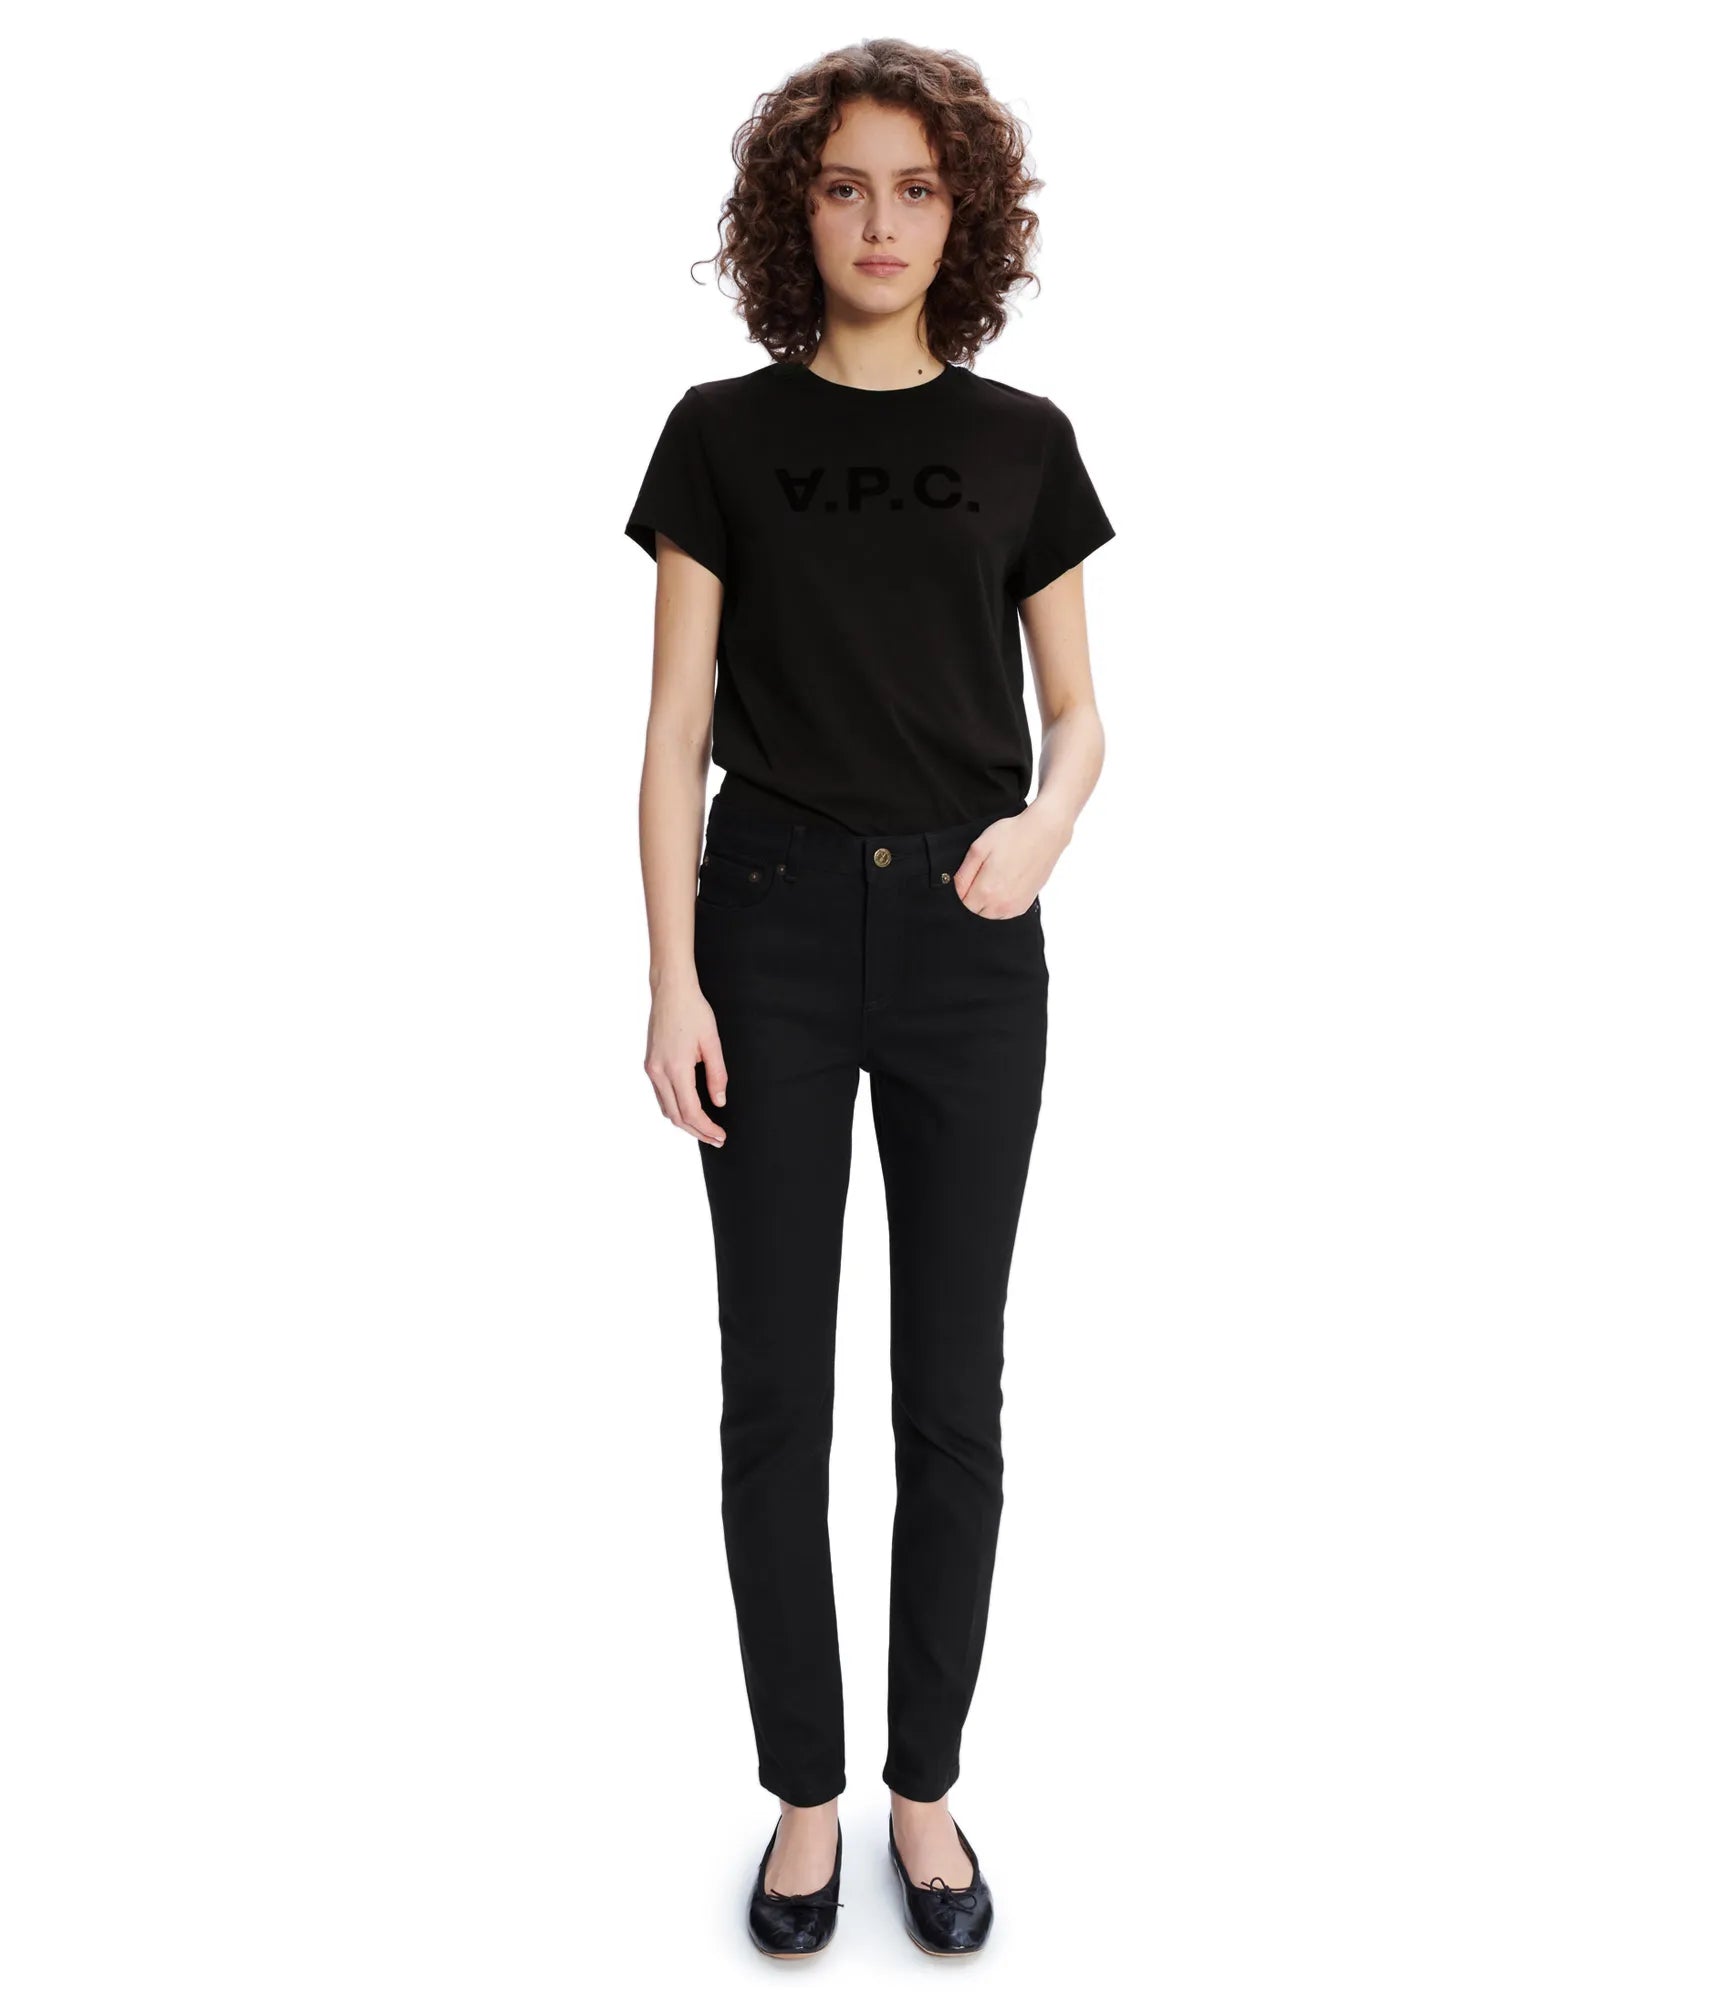 HOT高品質APC VPC Tシャツ black sizeS Tシャツ/カットソー(半袖/袖なし)